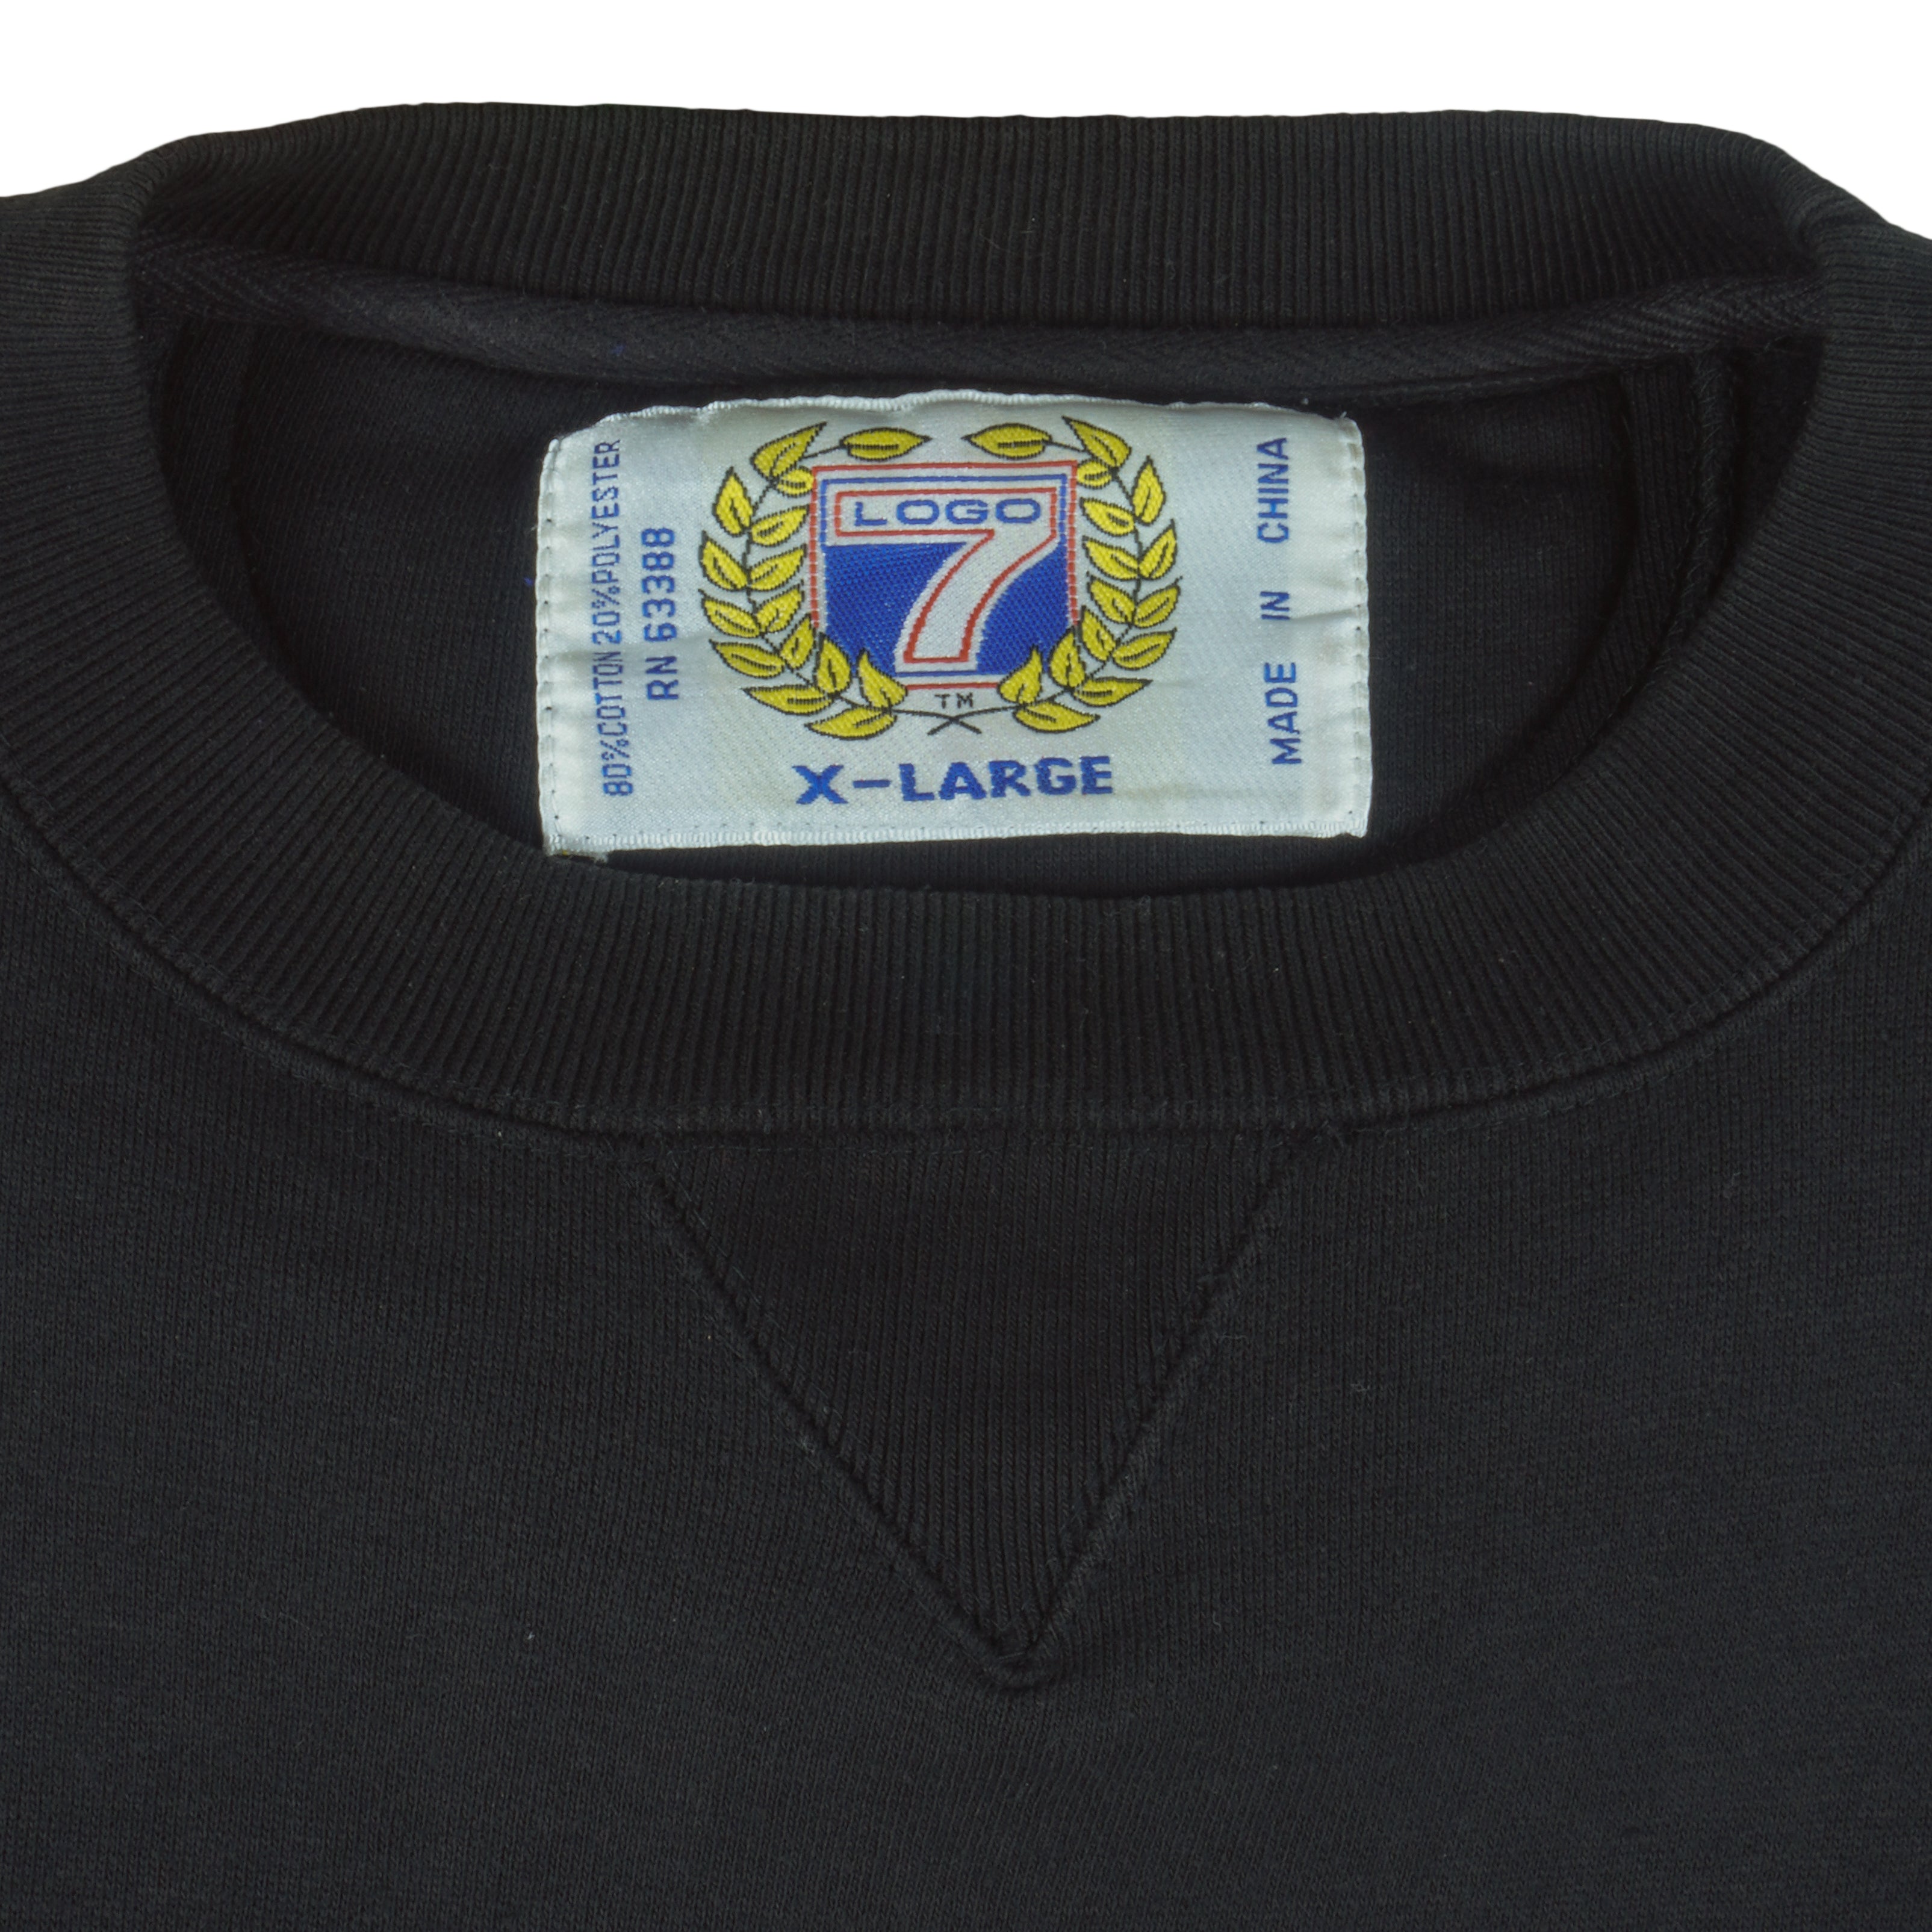 Vintage NHL (Logo 7) - Tampa Bay Lightning Sweatshirt 1990s X-Large